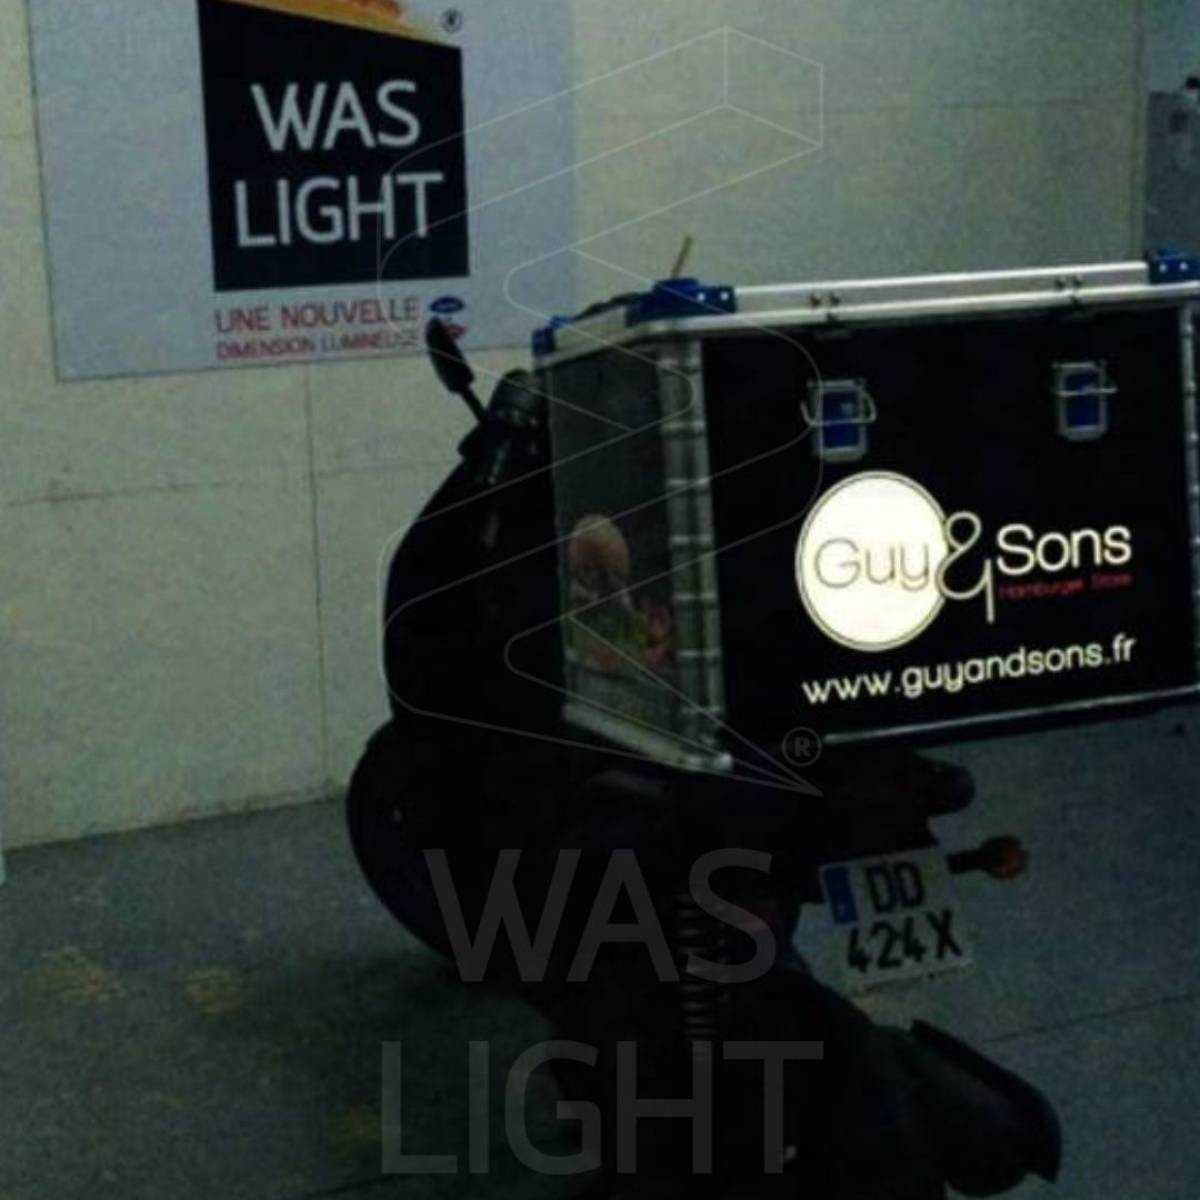 Covering électroluminescent sur les scooters des restaurants Guy & Sons à Lyon